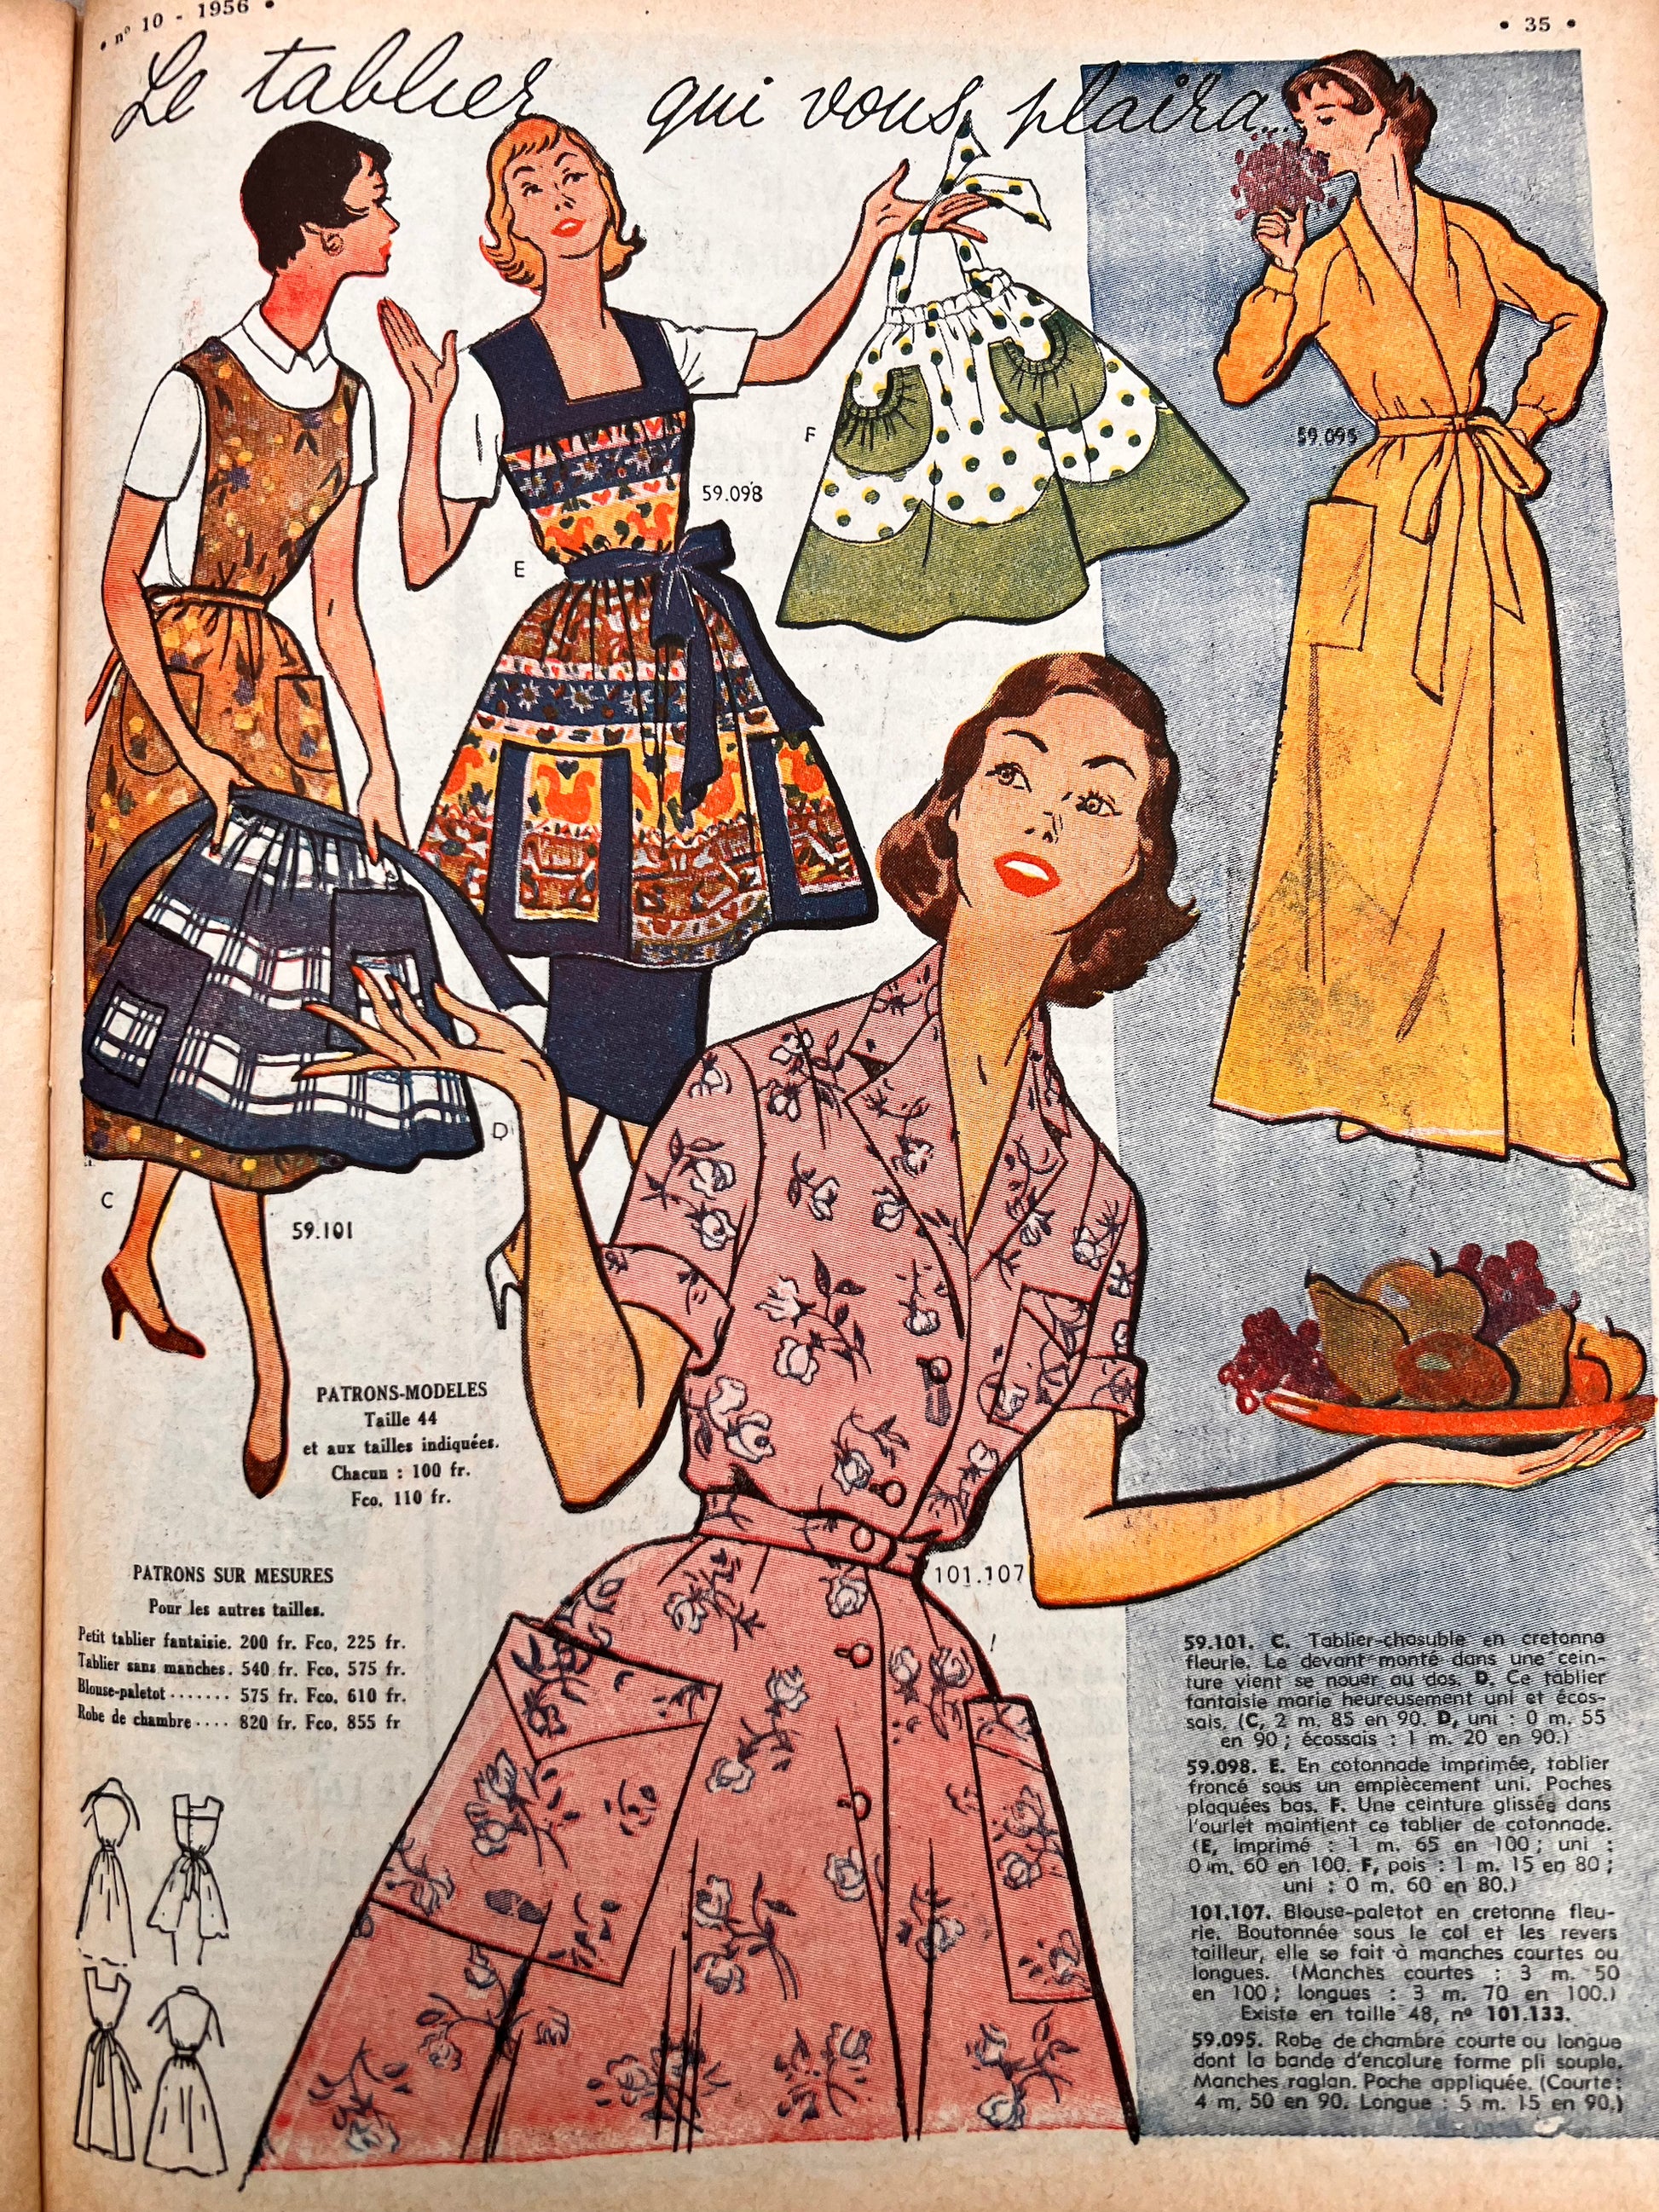 Pair-mid-century 1956 French Fashion Prints-daywear -  Canada